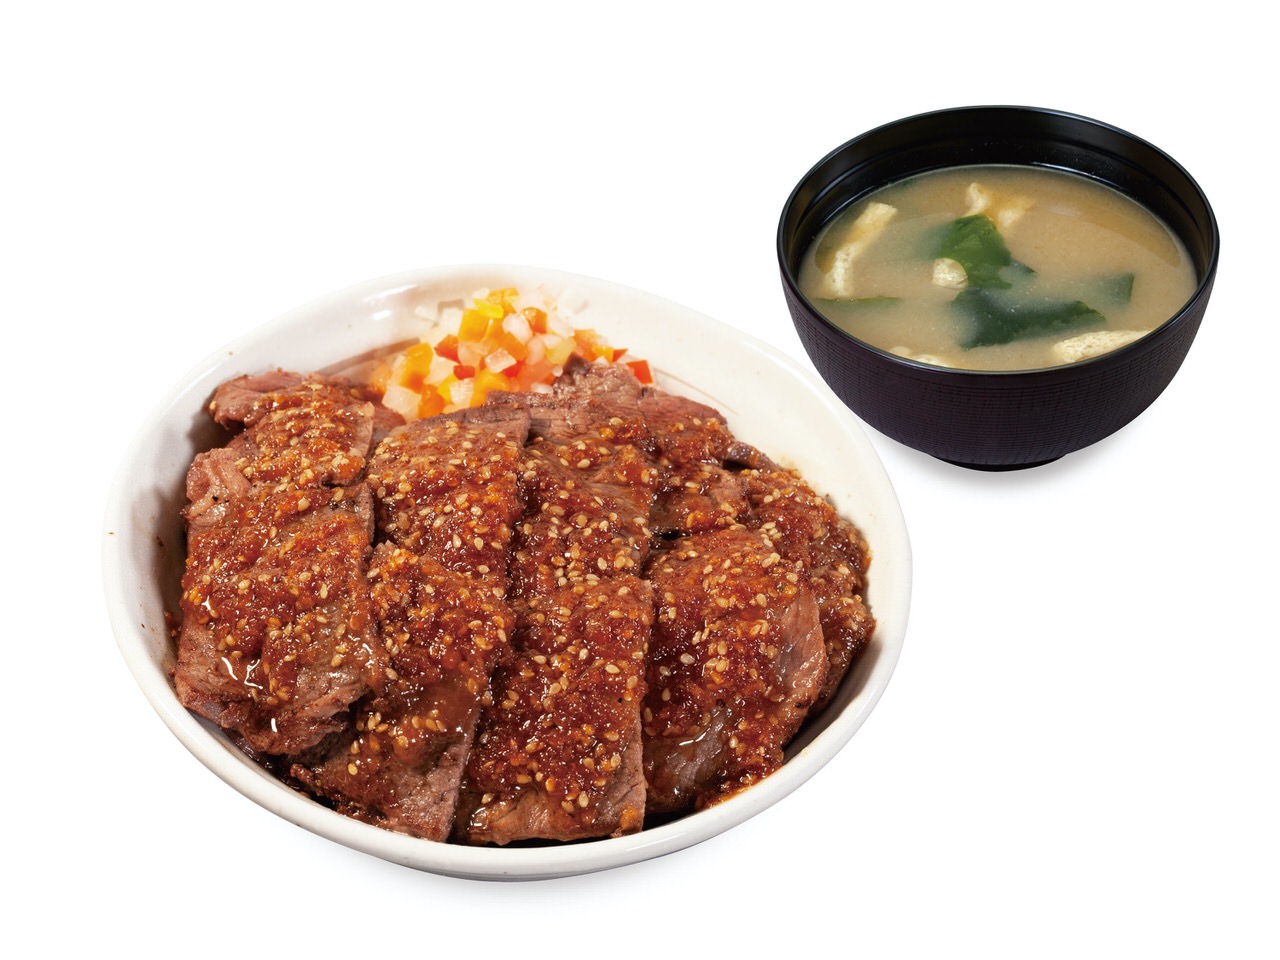 【松屋】選べる極旨ソースにはみ出るボリュームの「牛ステーキ丼」10月6日より発売開始